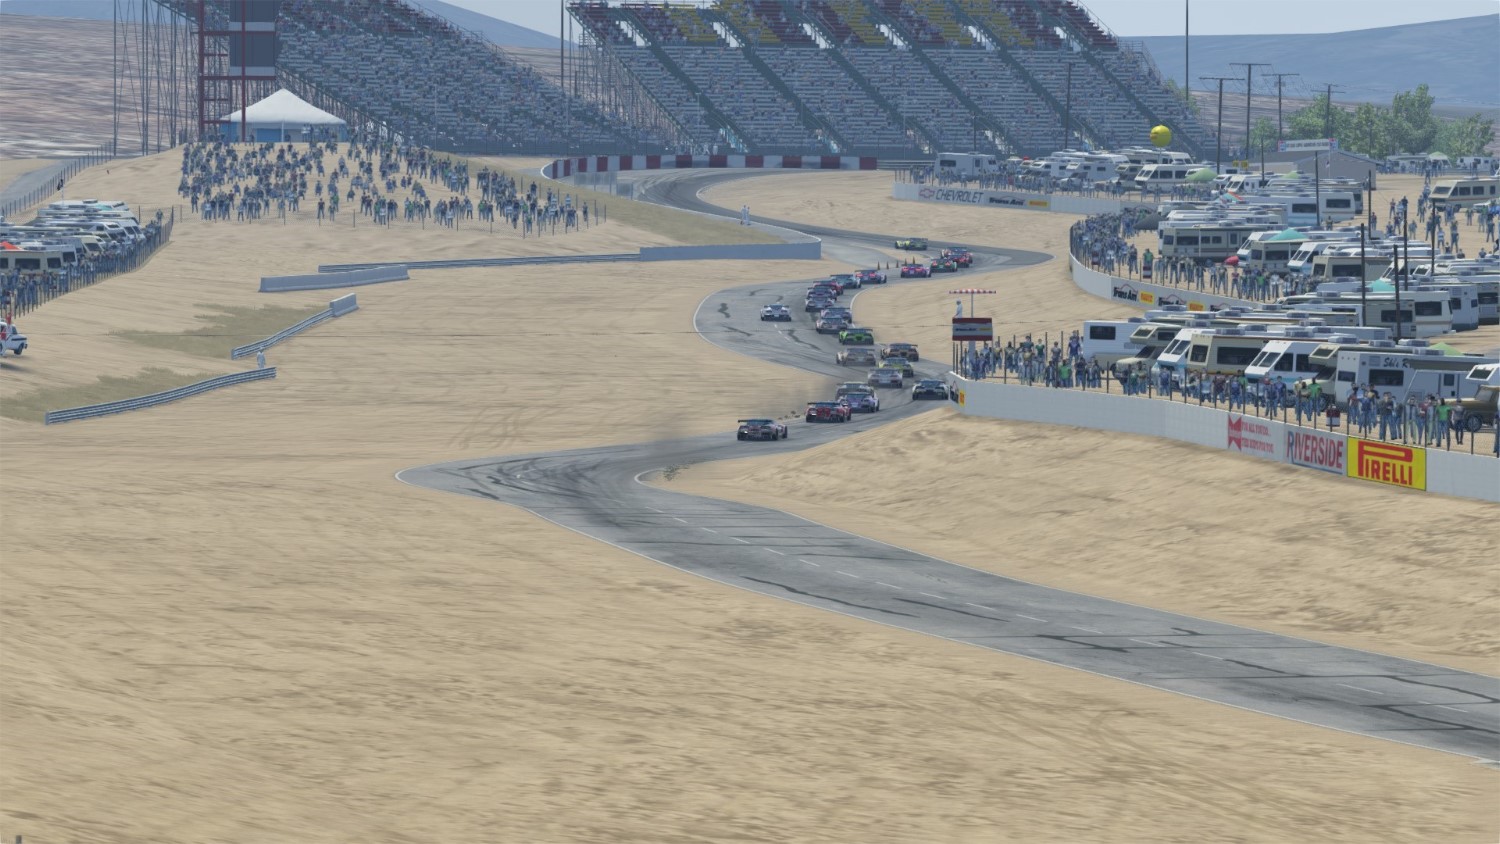 Riverside Raceway resurrected virtually